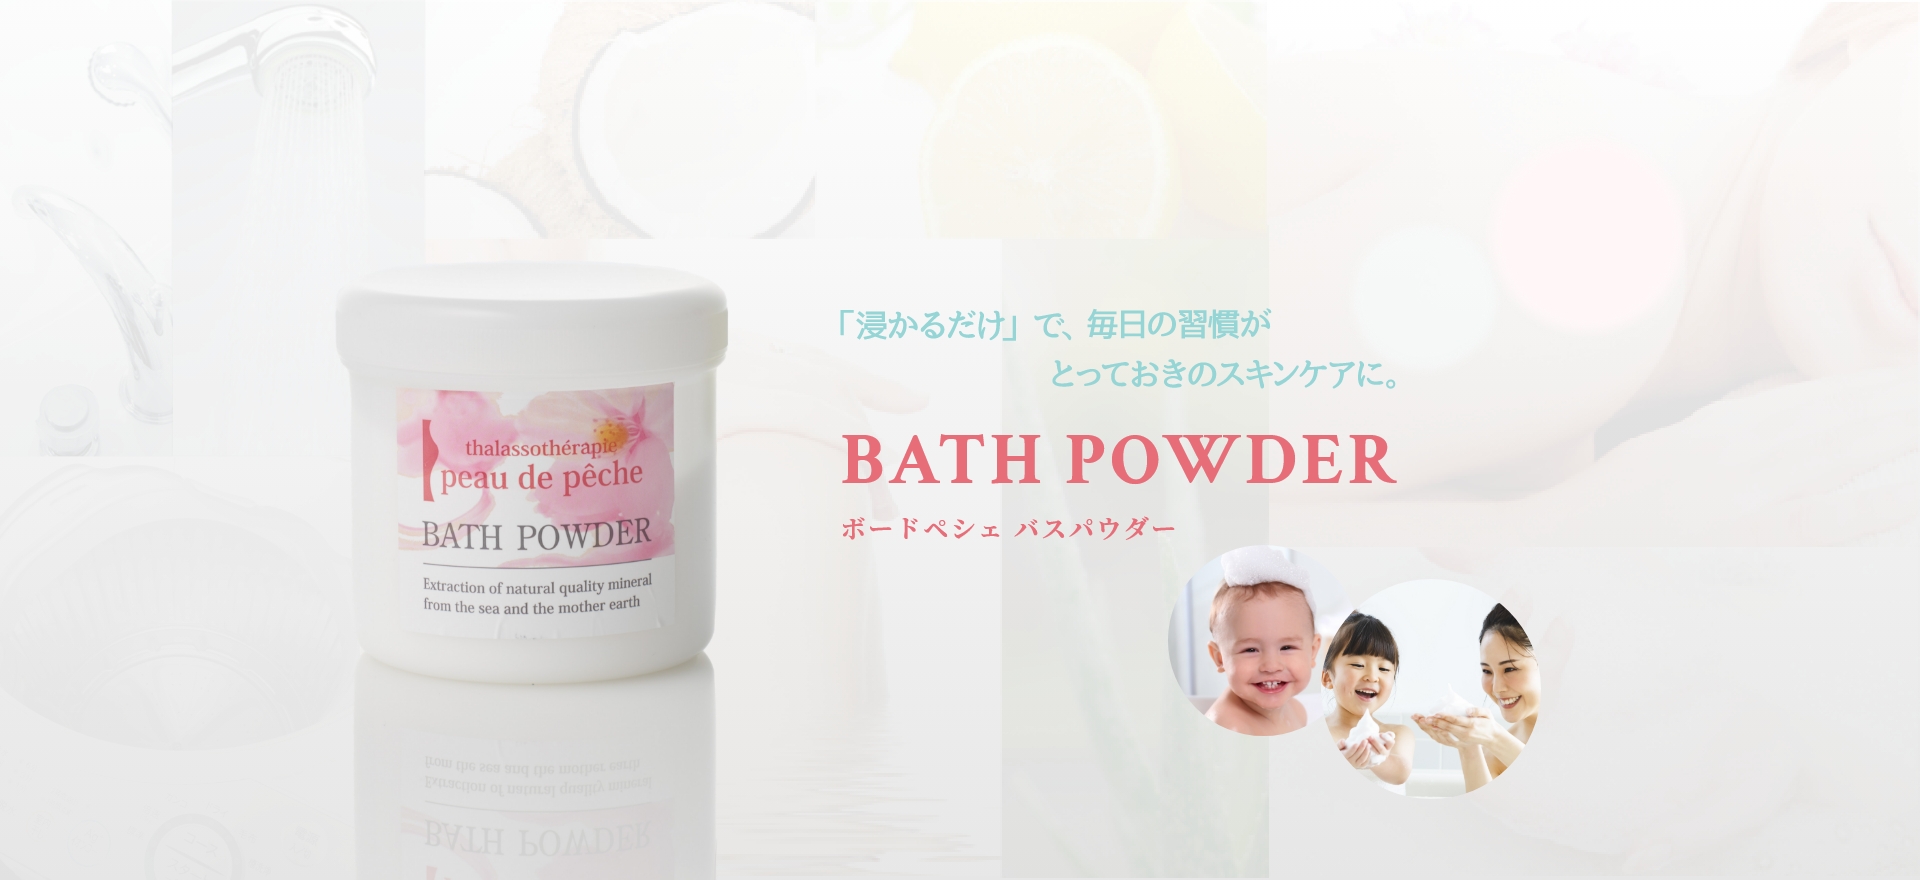 bath powder